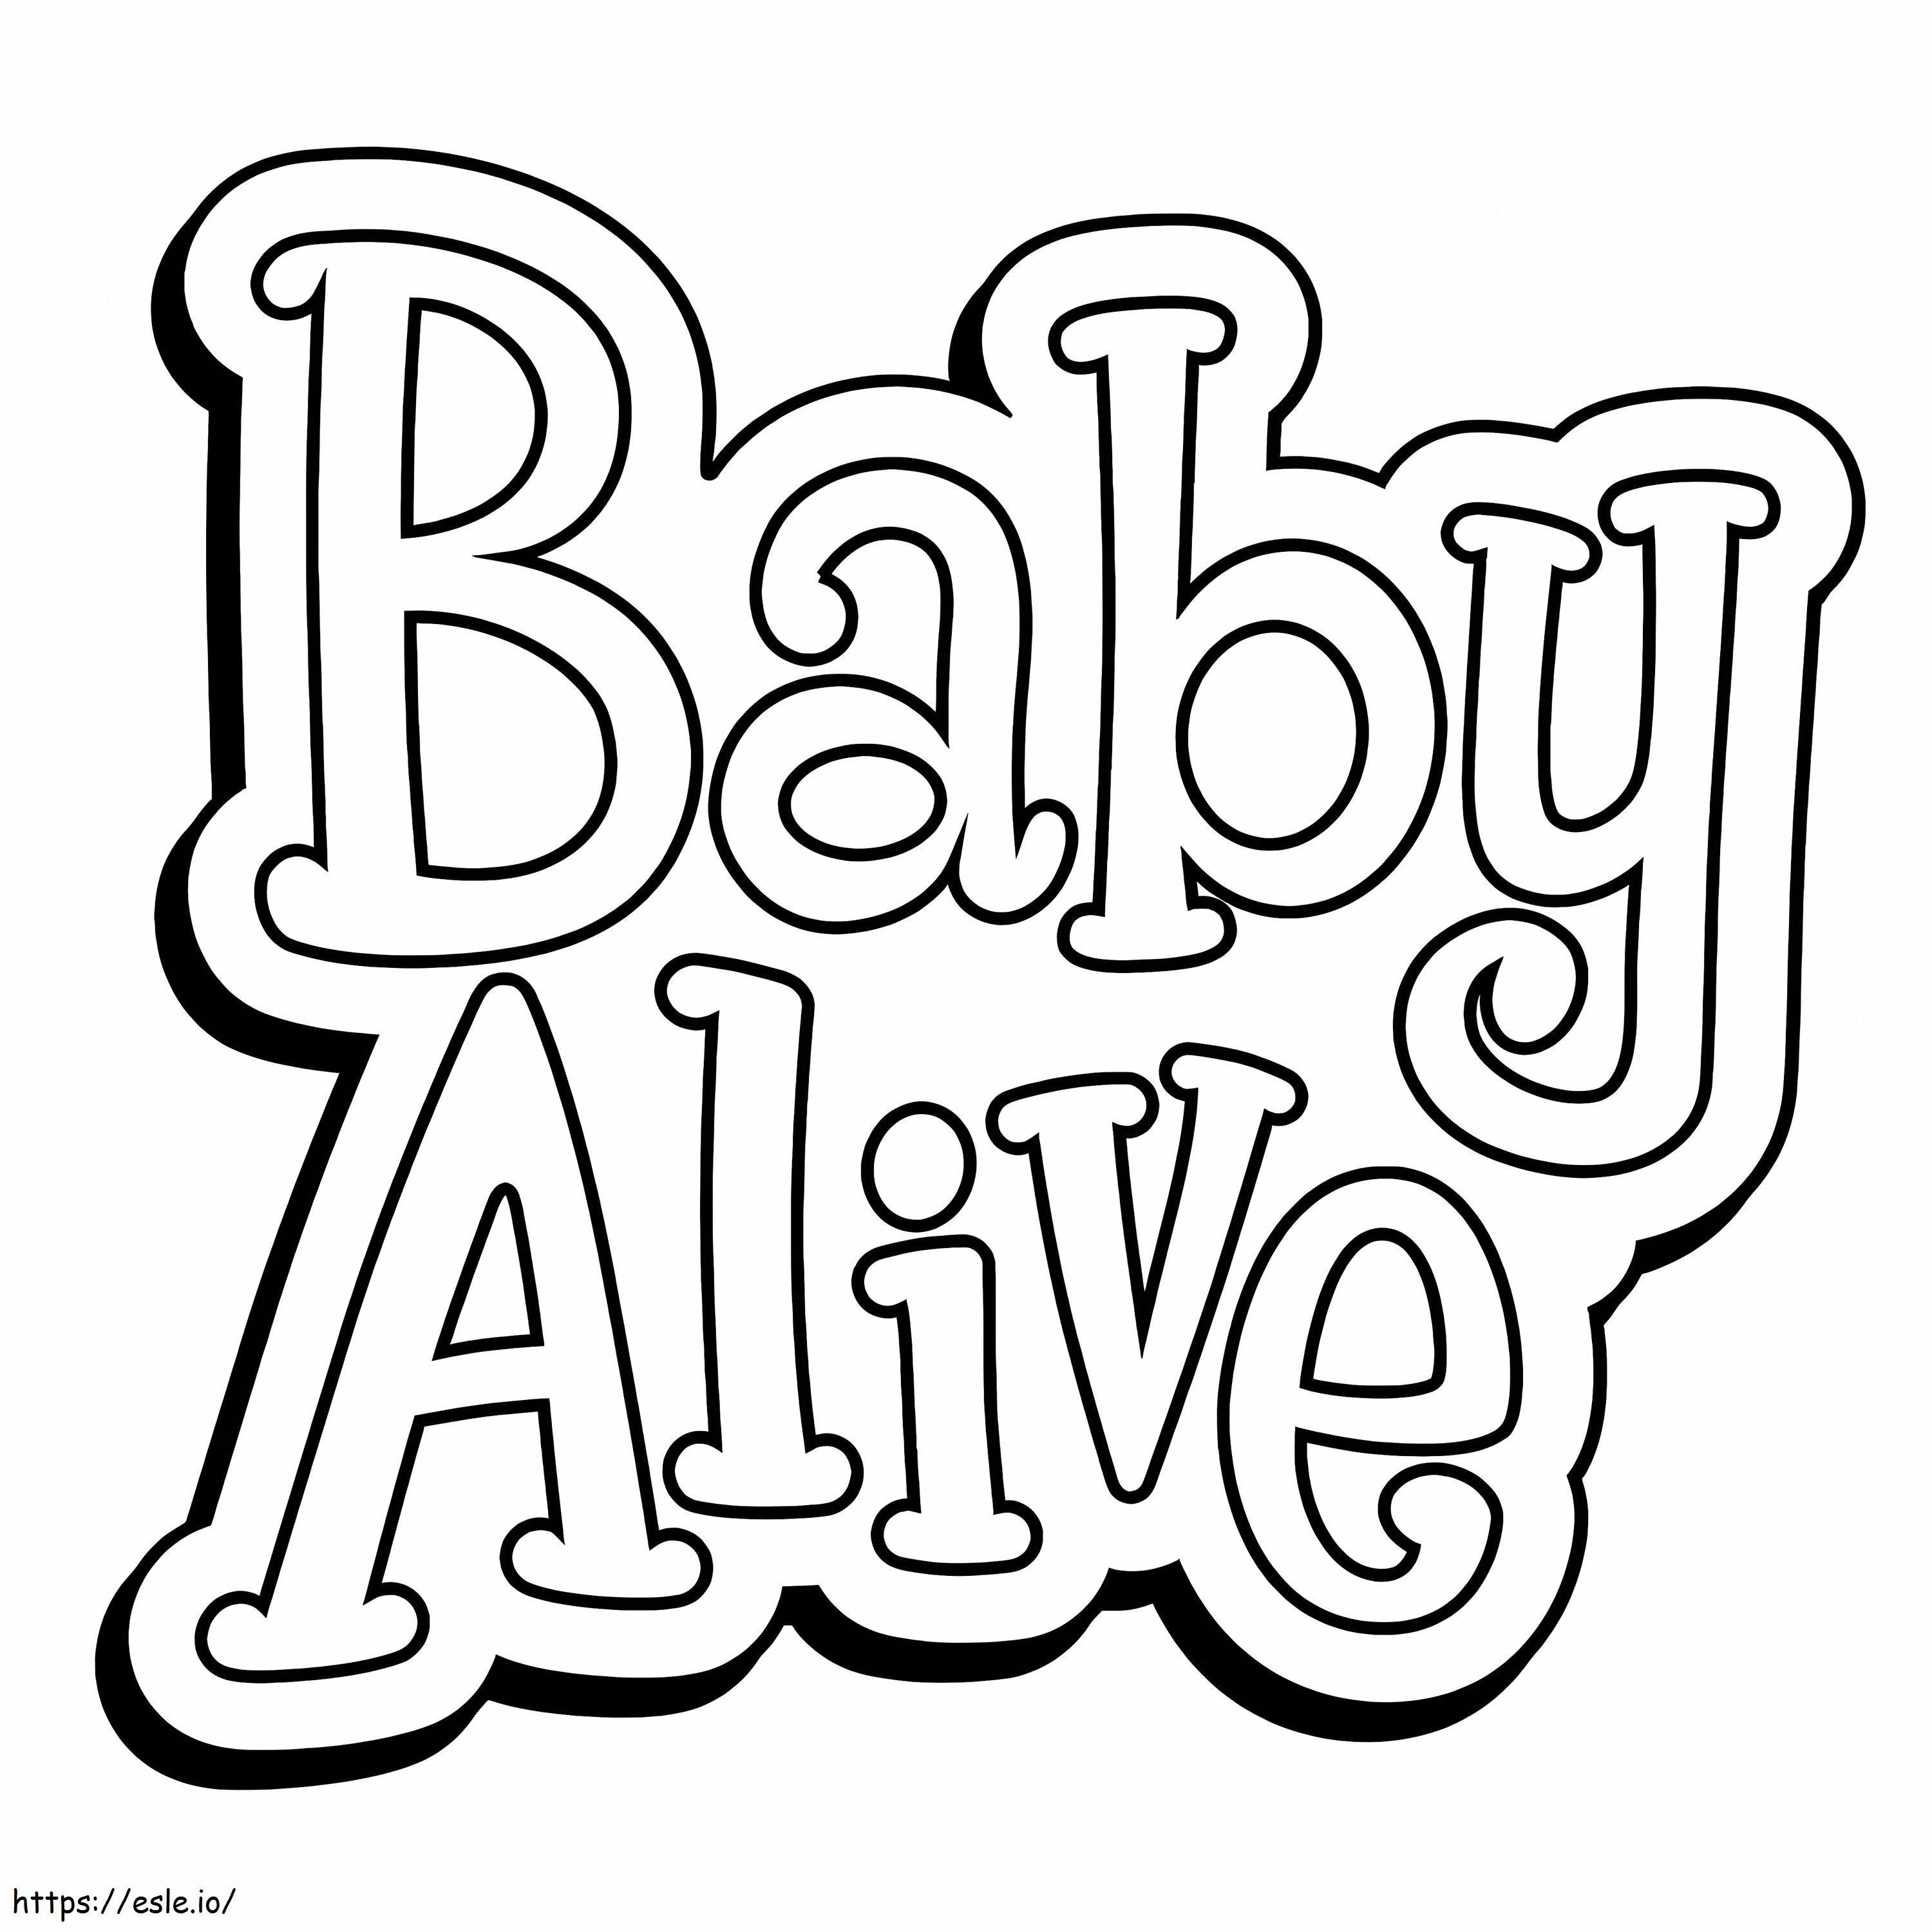 Logotipo Baby Alive para colorir